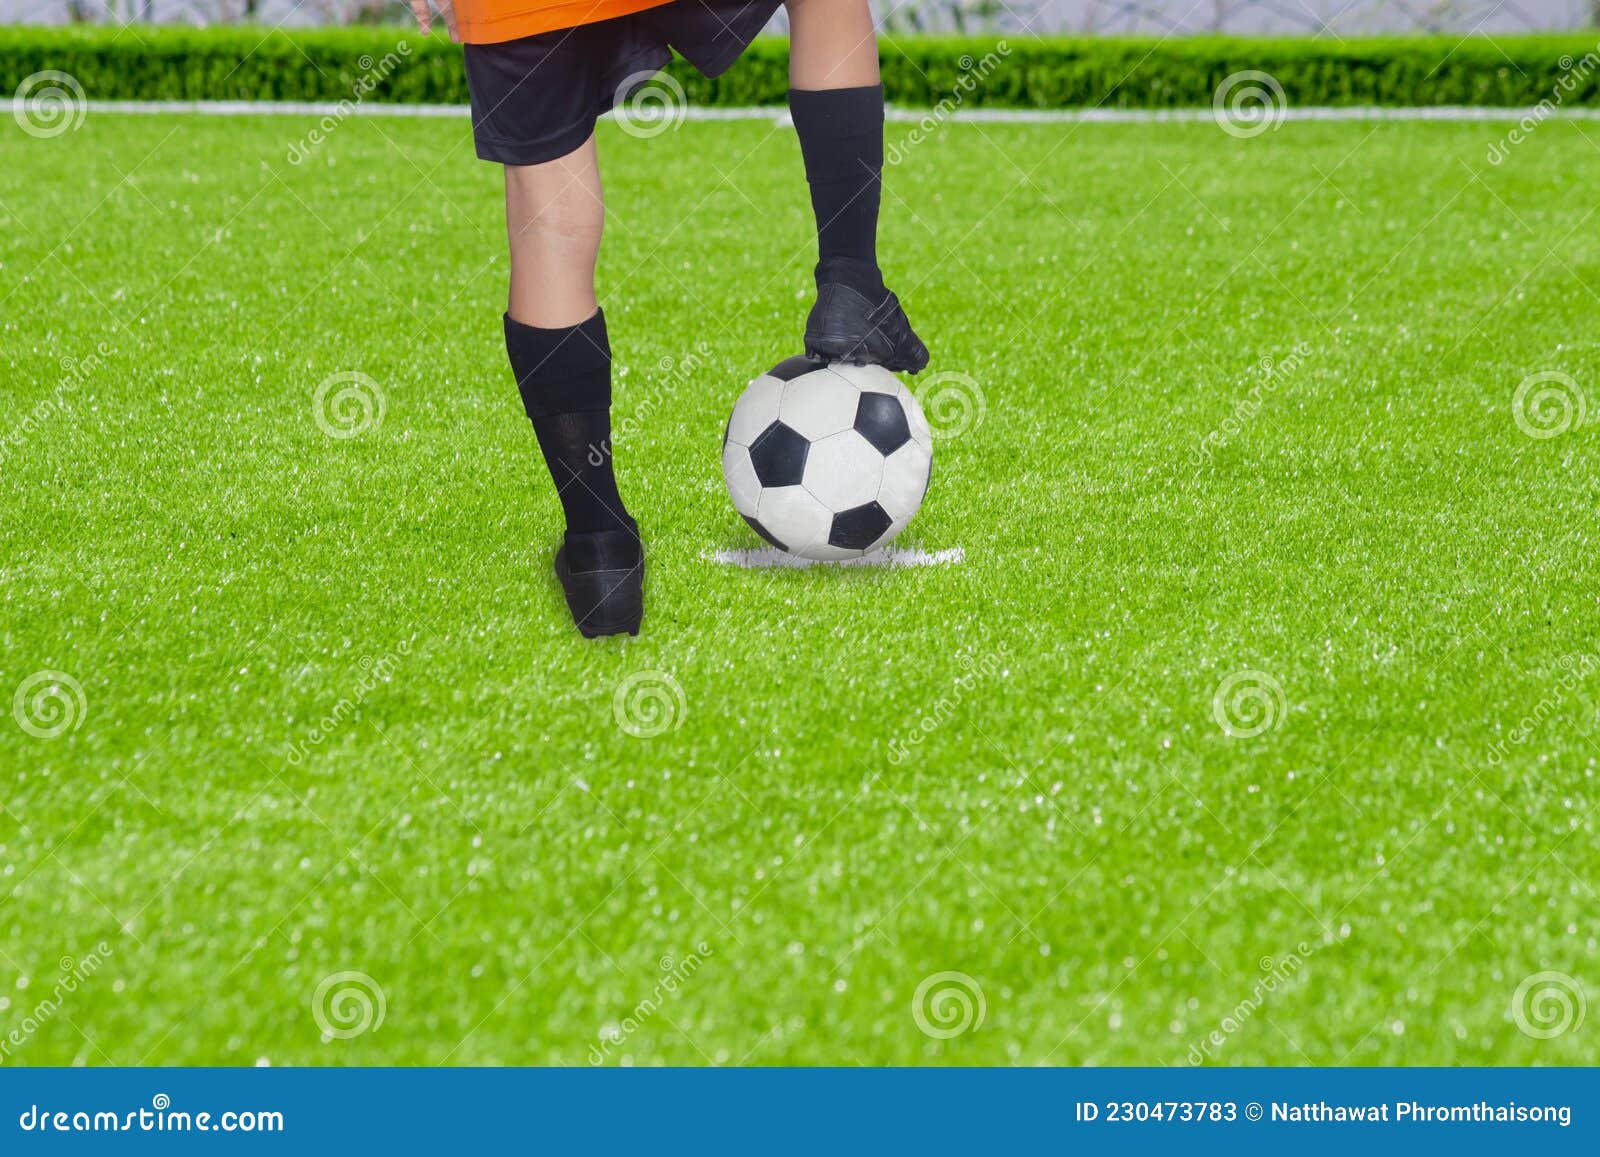 Imagem gratuita: bola, jogo, bola de futebol, grama, futebol, couro, futebol,  desporto, campo, recreação